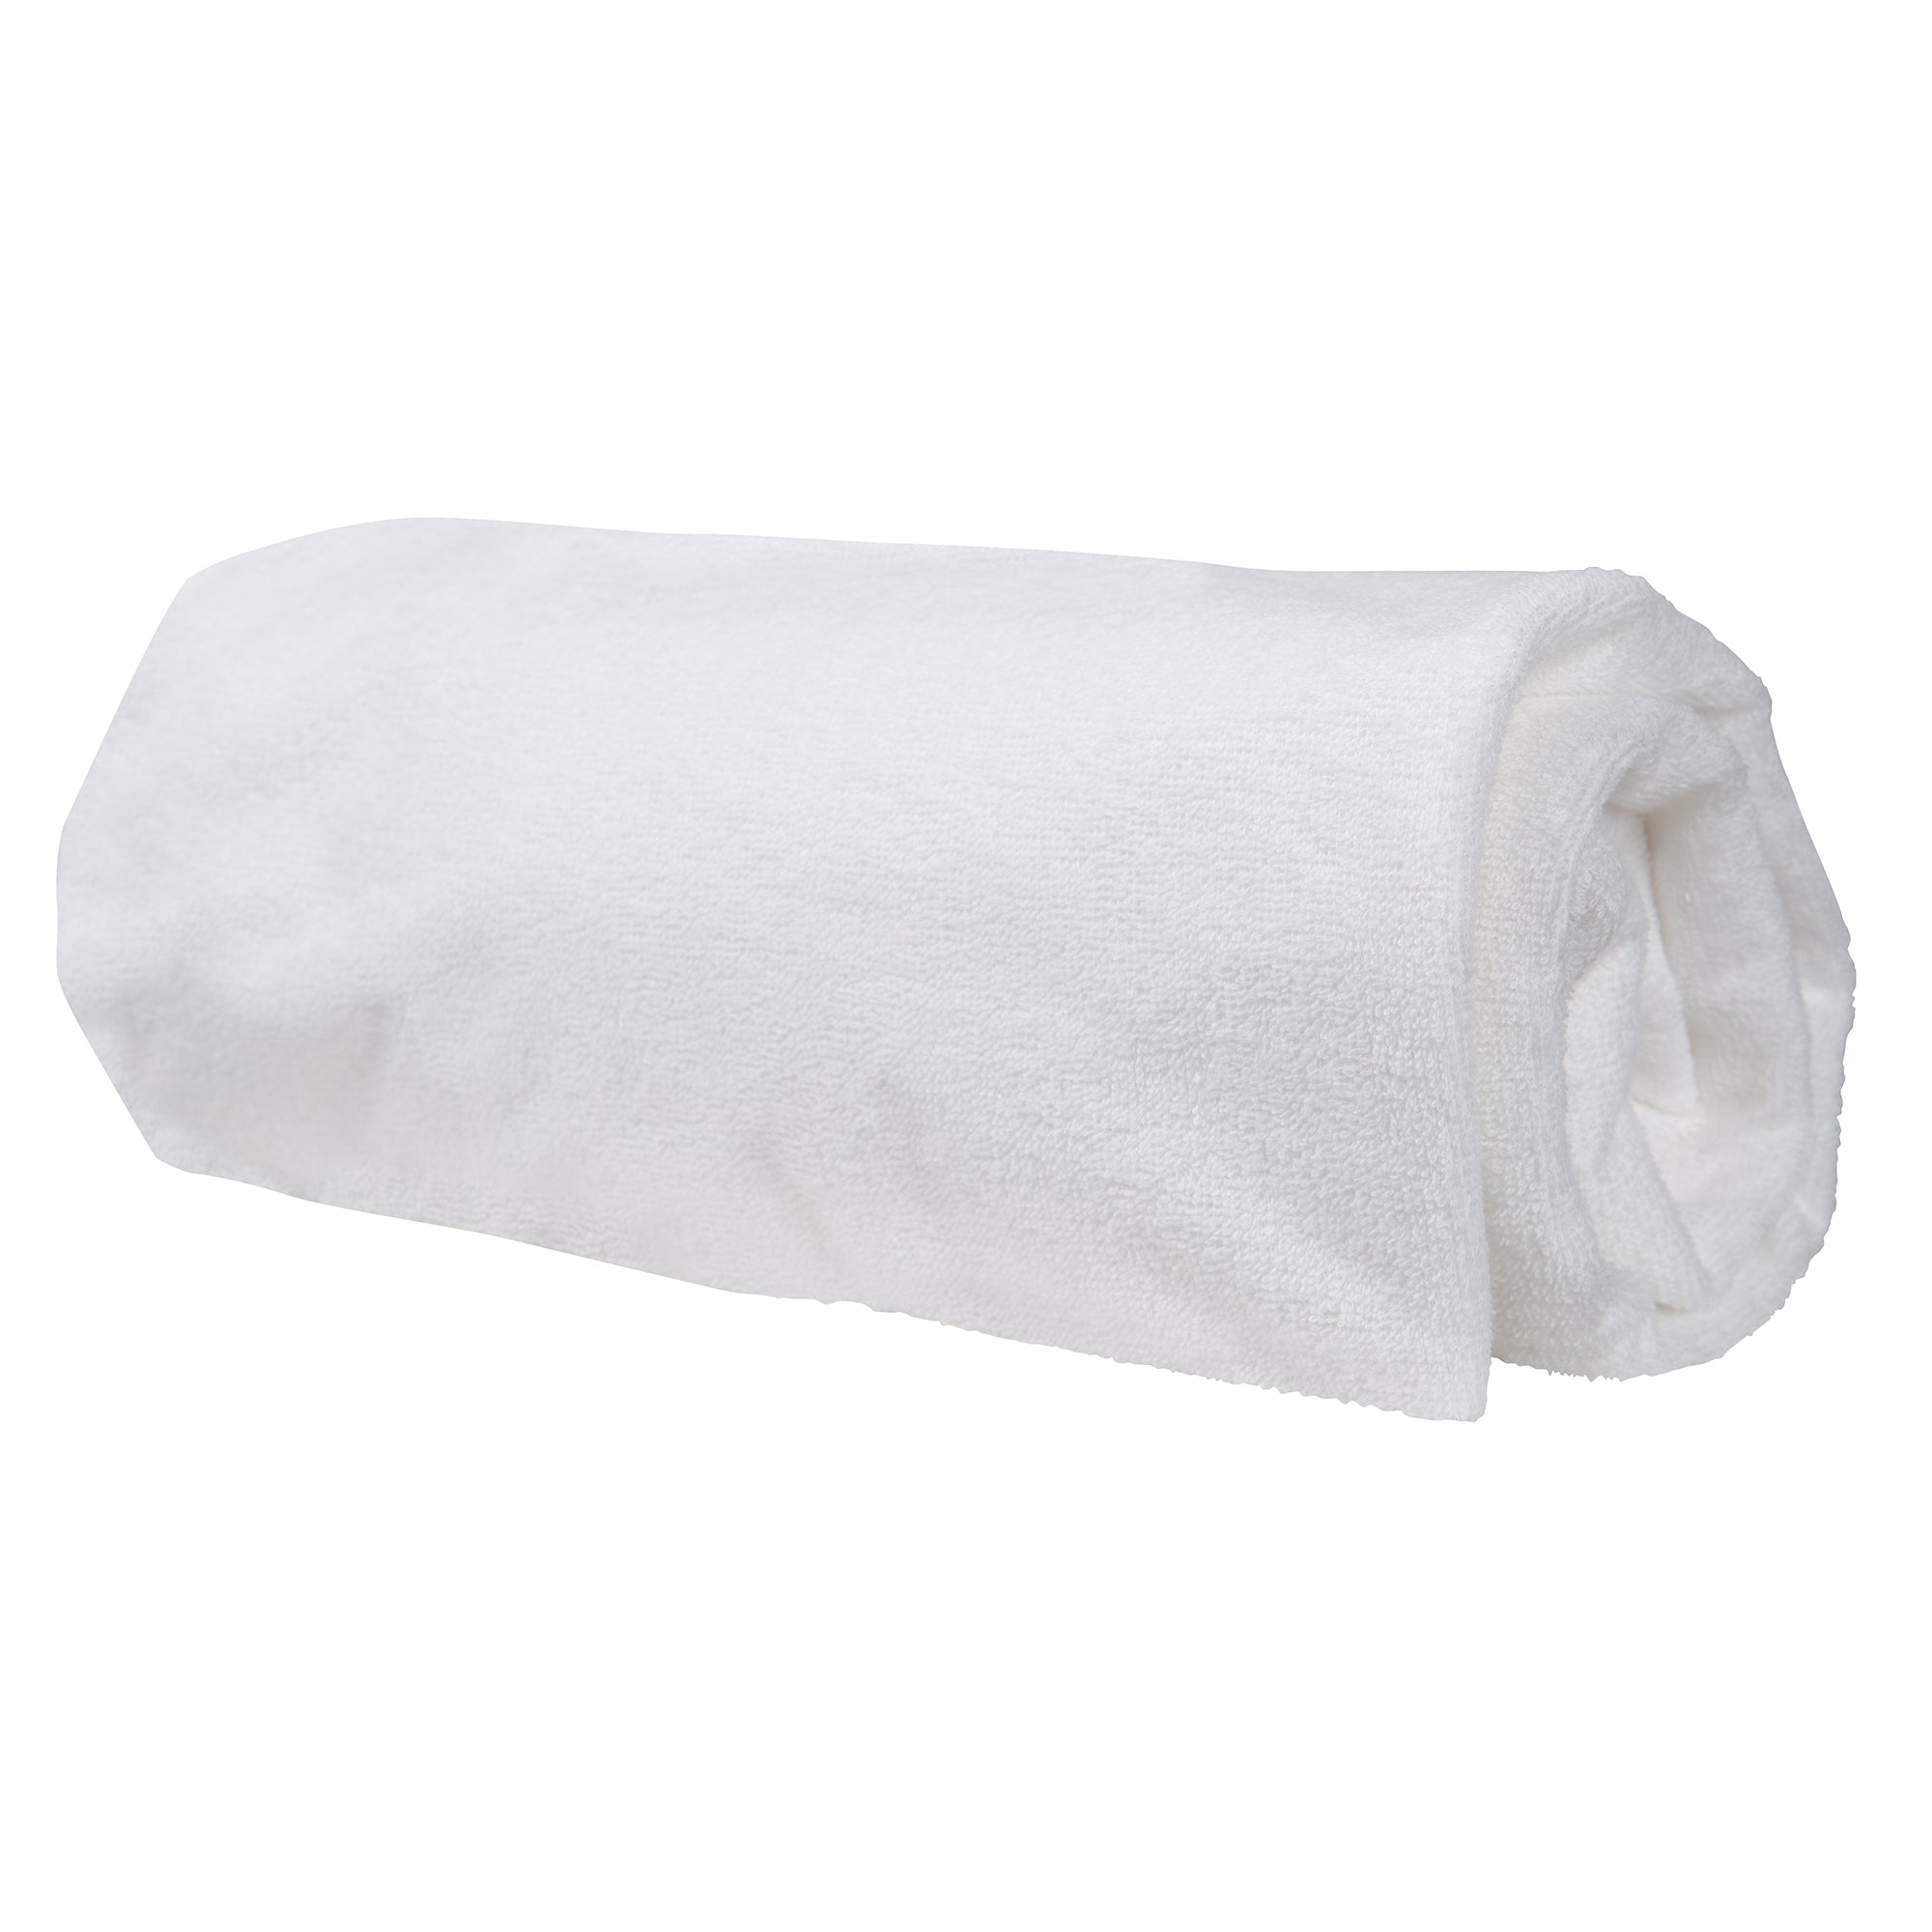 protège matelas imperméable et respirant 60x120 en coton blanc